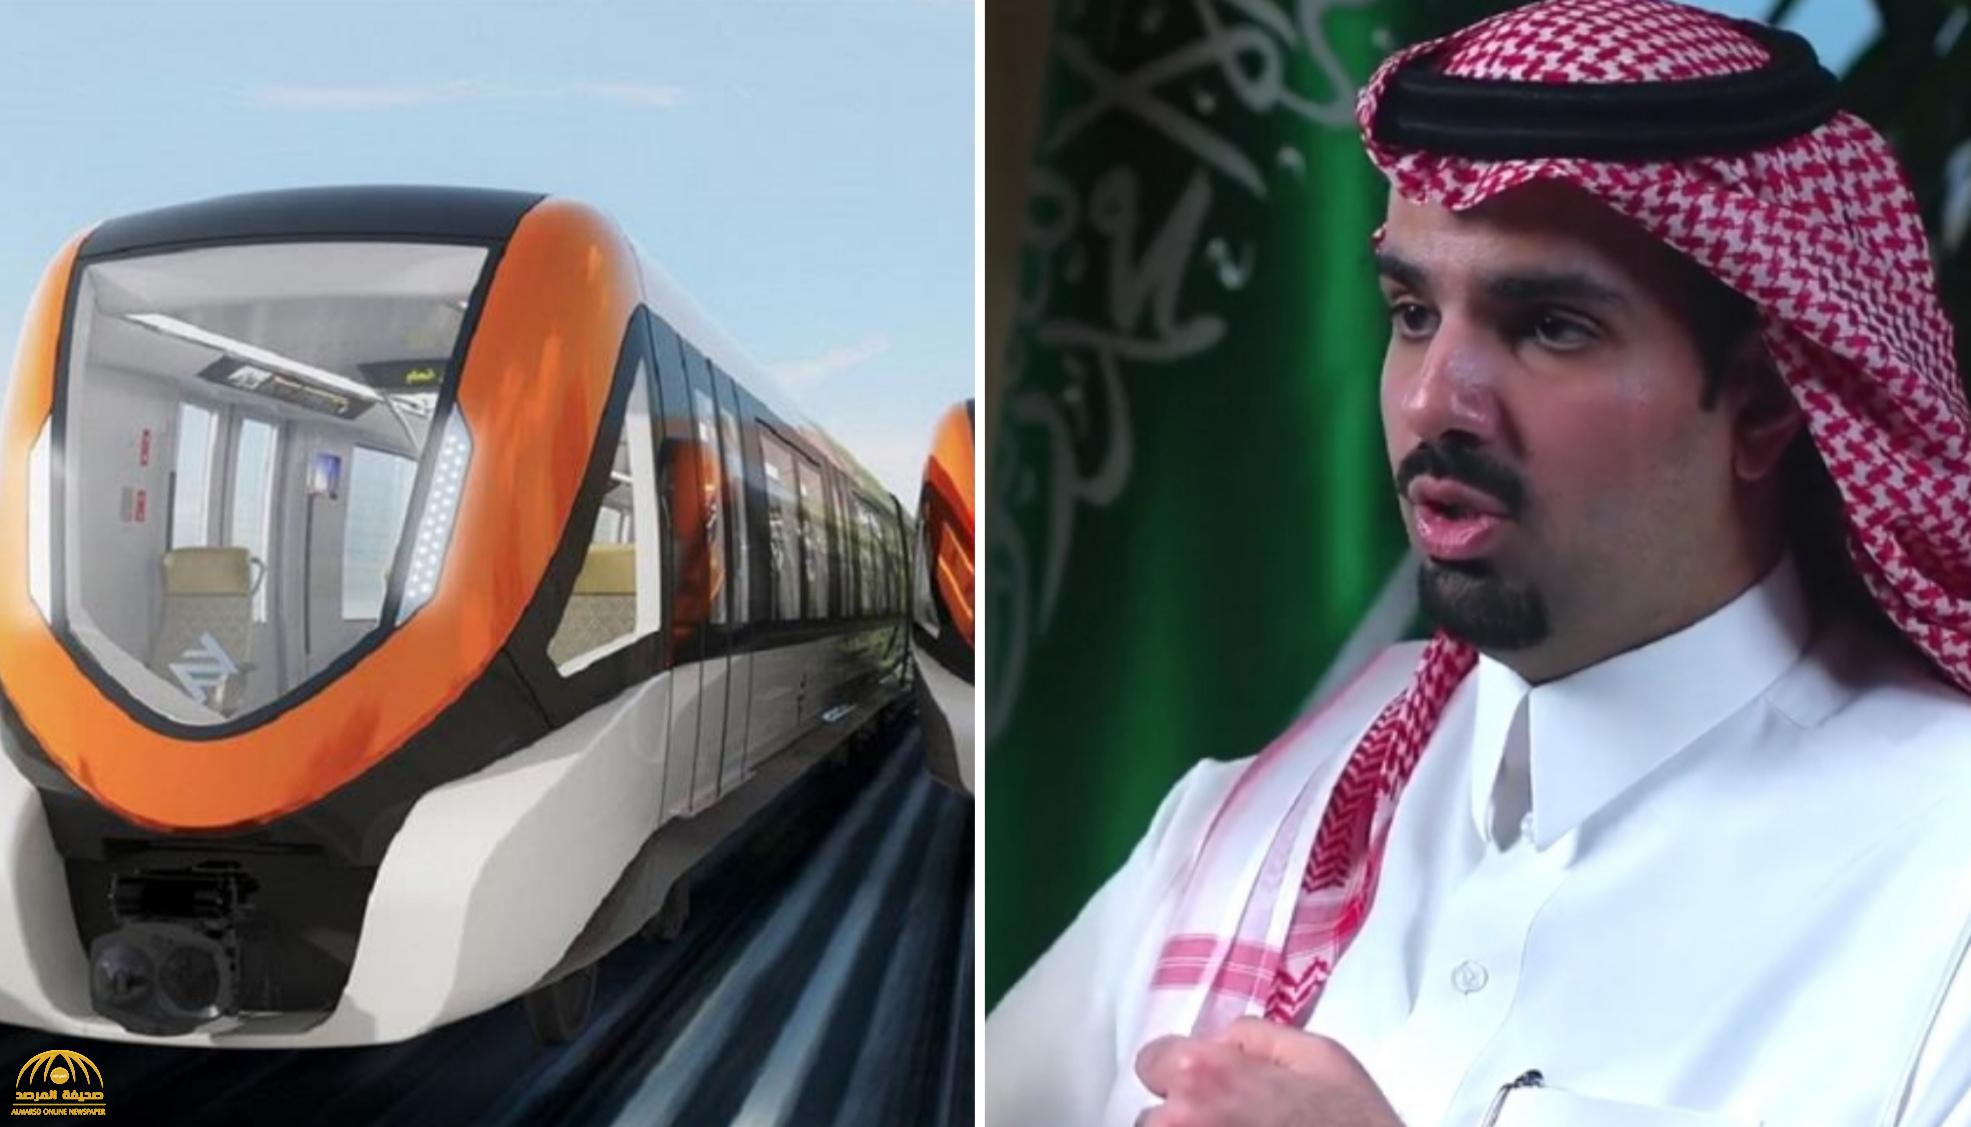 ليس القطار والمحطات فقط.. بالفيديو: الأمير فيصل بن عياف يكشف آخر تطورات "مشروع مترو الرياض" وموعد تشغيله!